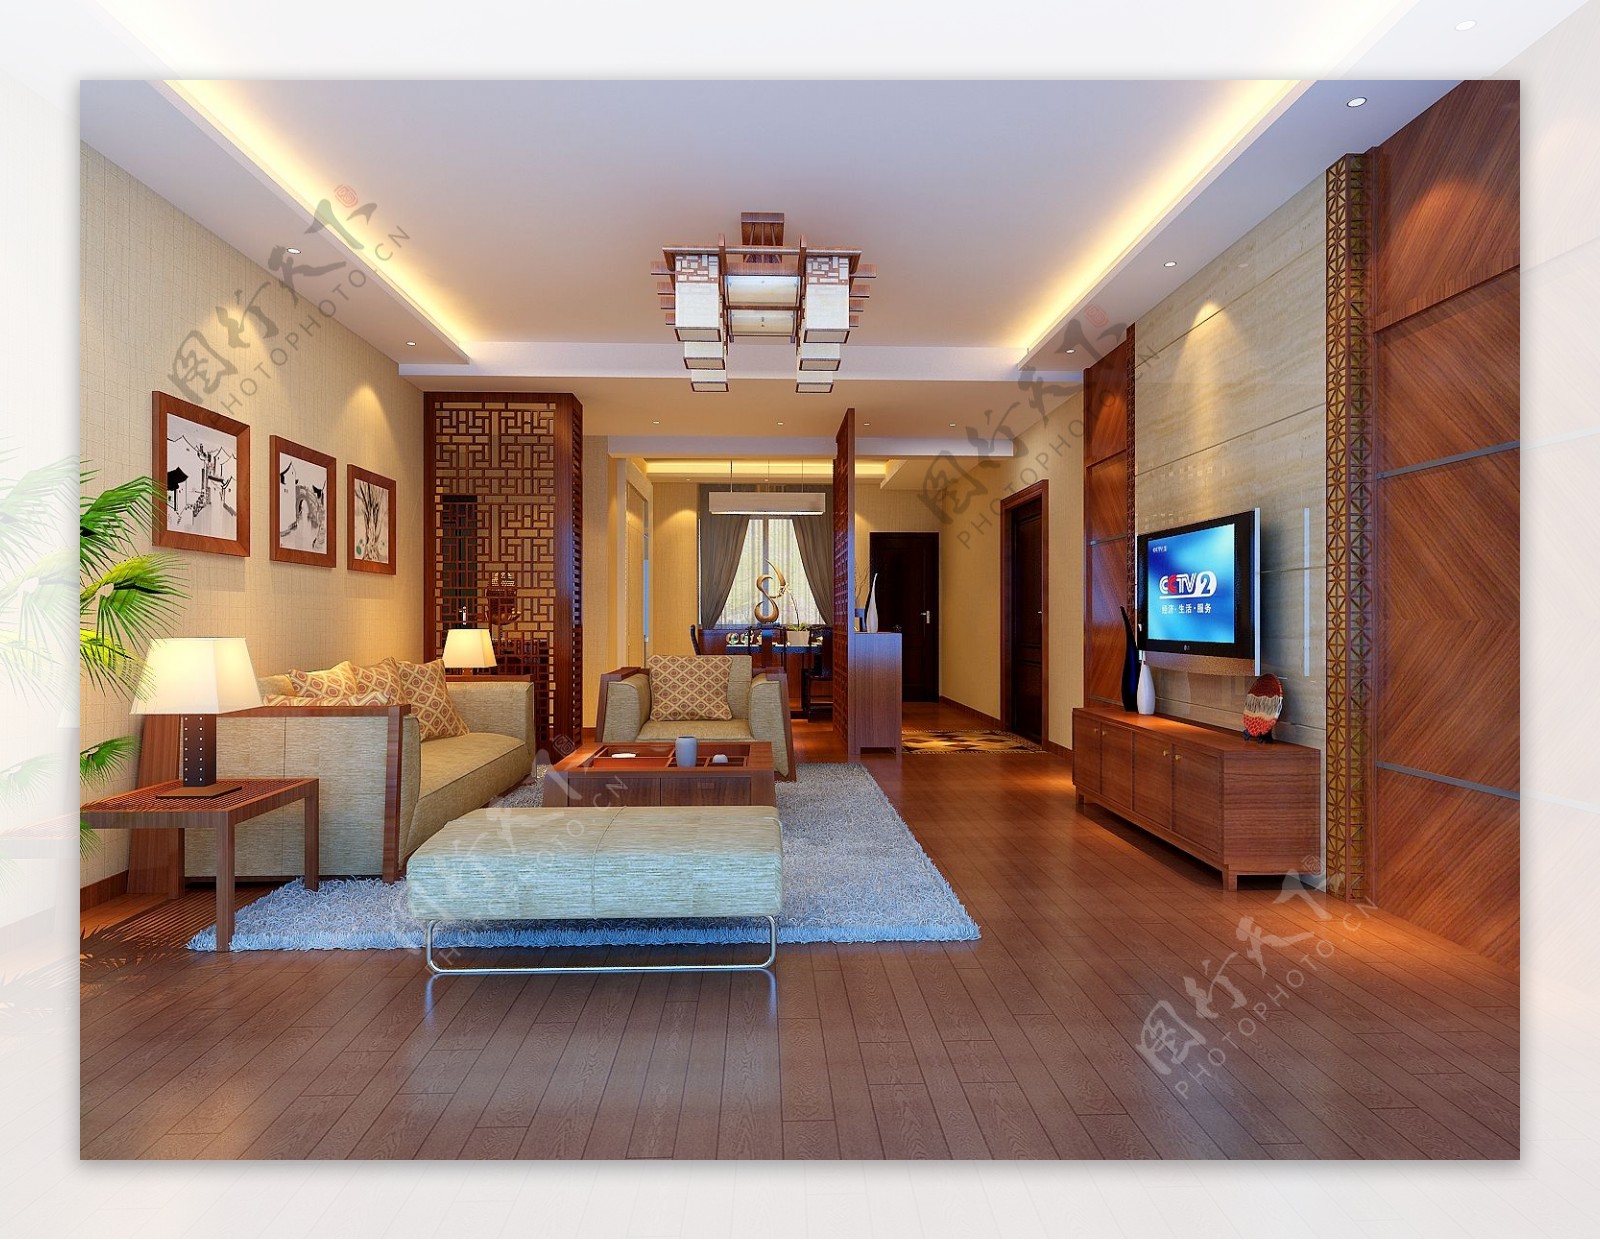 家居客厅模型免费下载灯具模型电视机